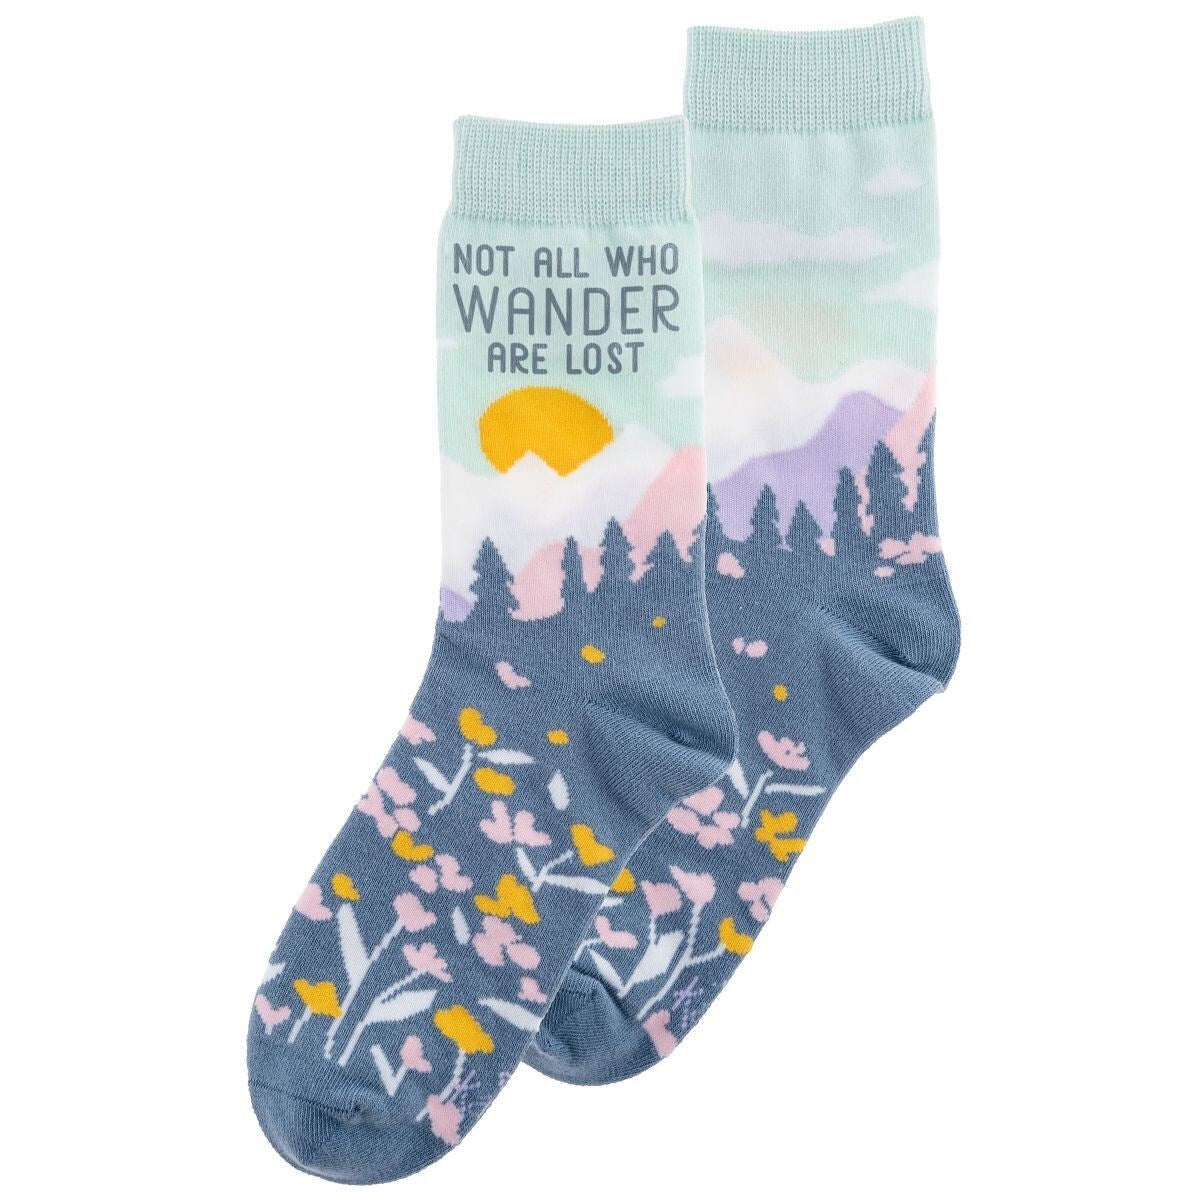 Wander Crew Socks - Women